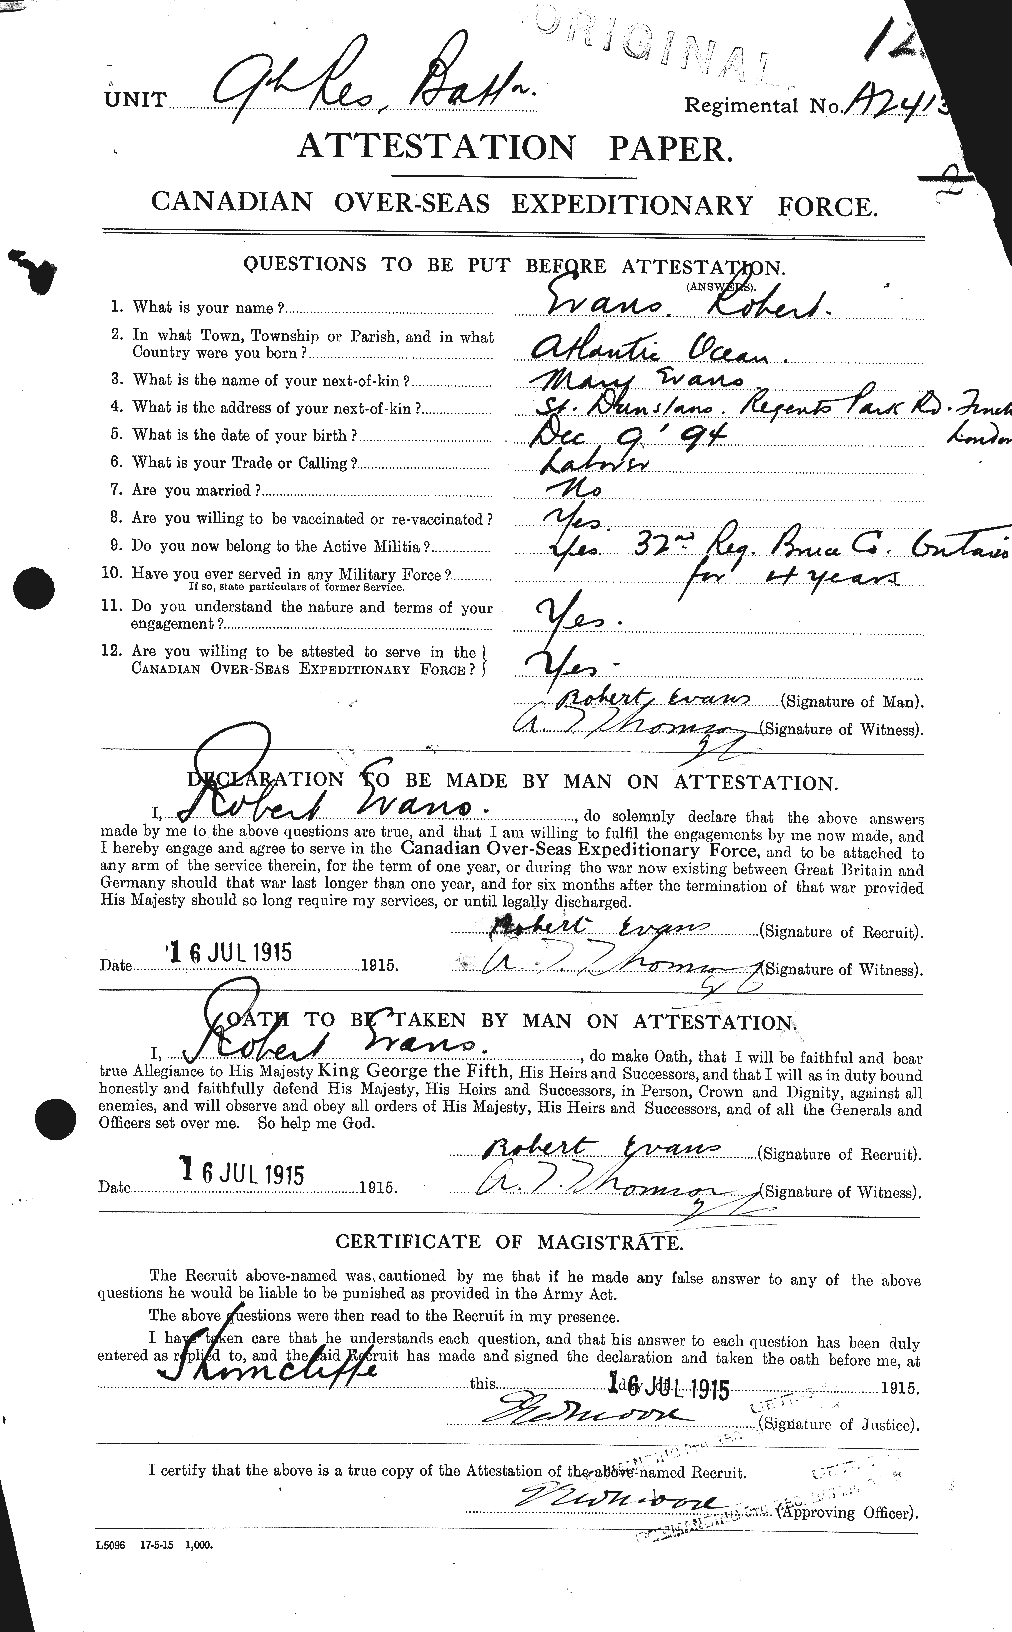 Dossiers du Personnel de la Première Guerre mondiale - CEC 313284a